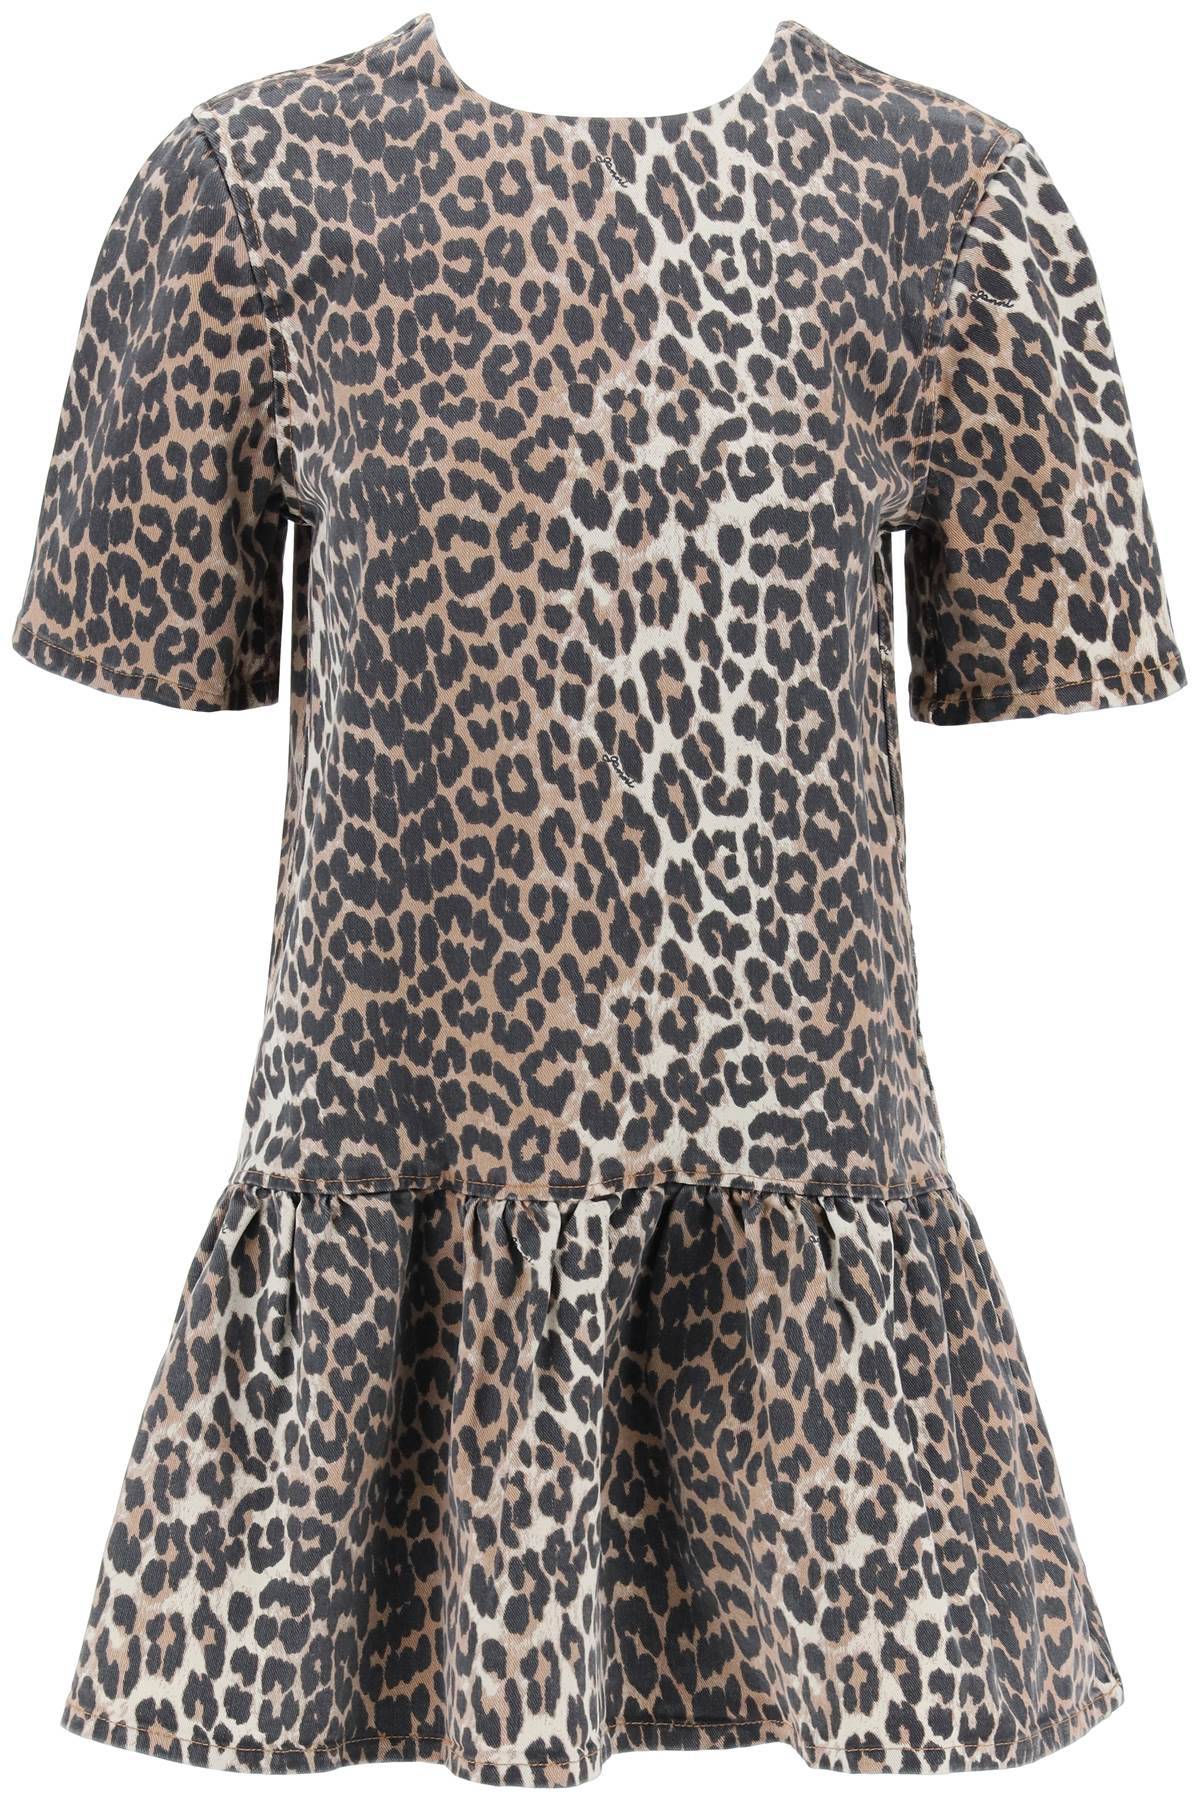 Ganni GANNI leopard print denim mini dress